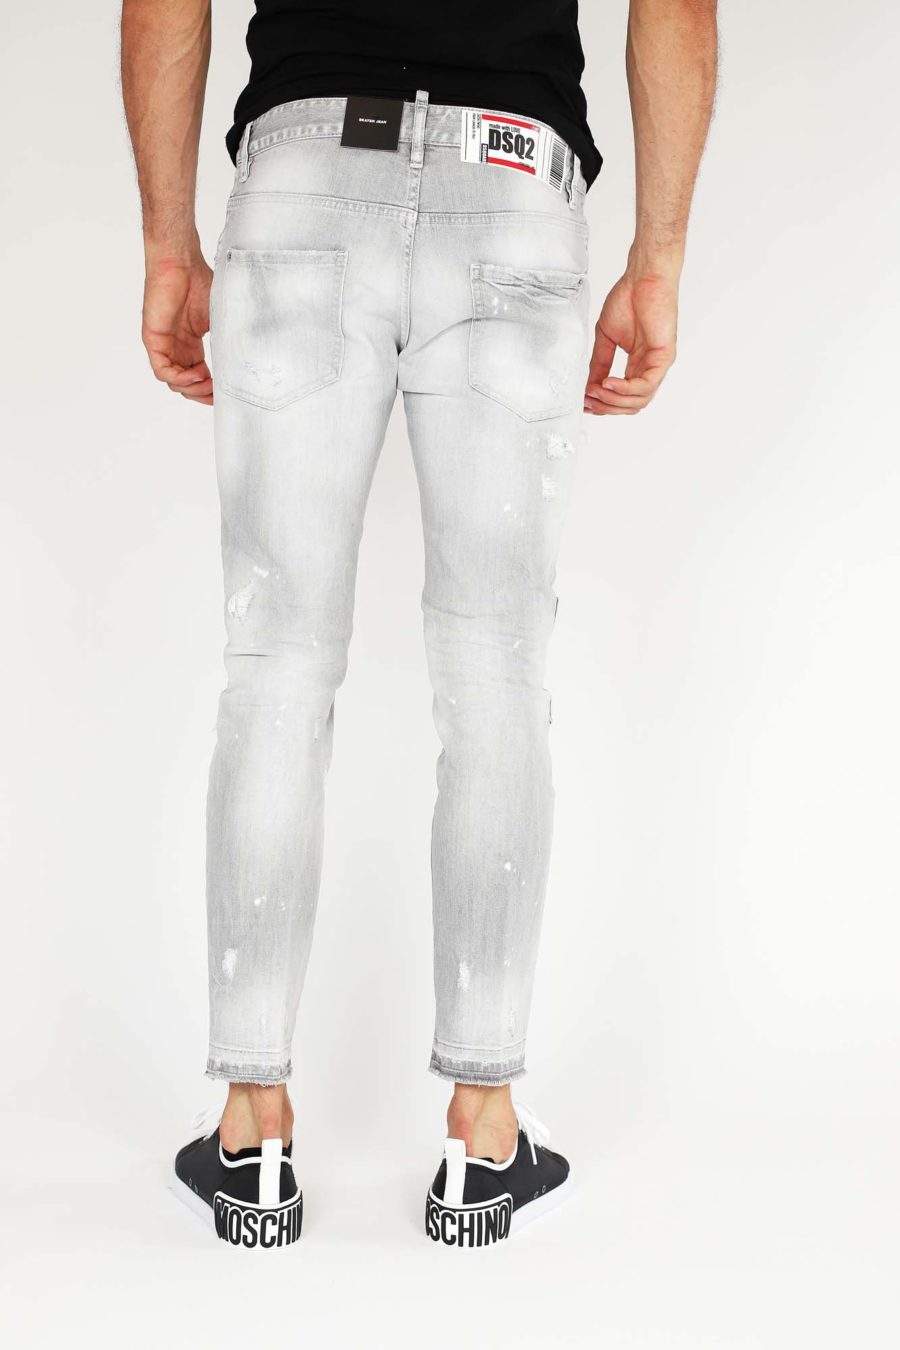 Pantalón vaquero "Skater" gris claro con parches - IMG 9855